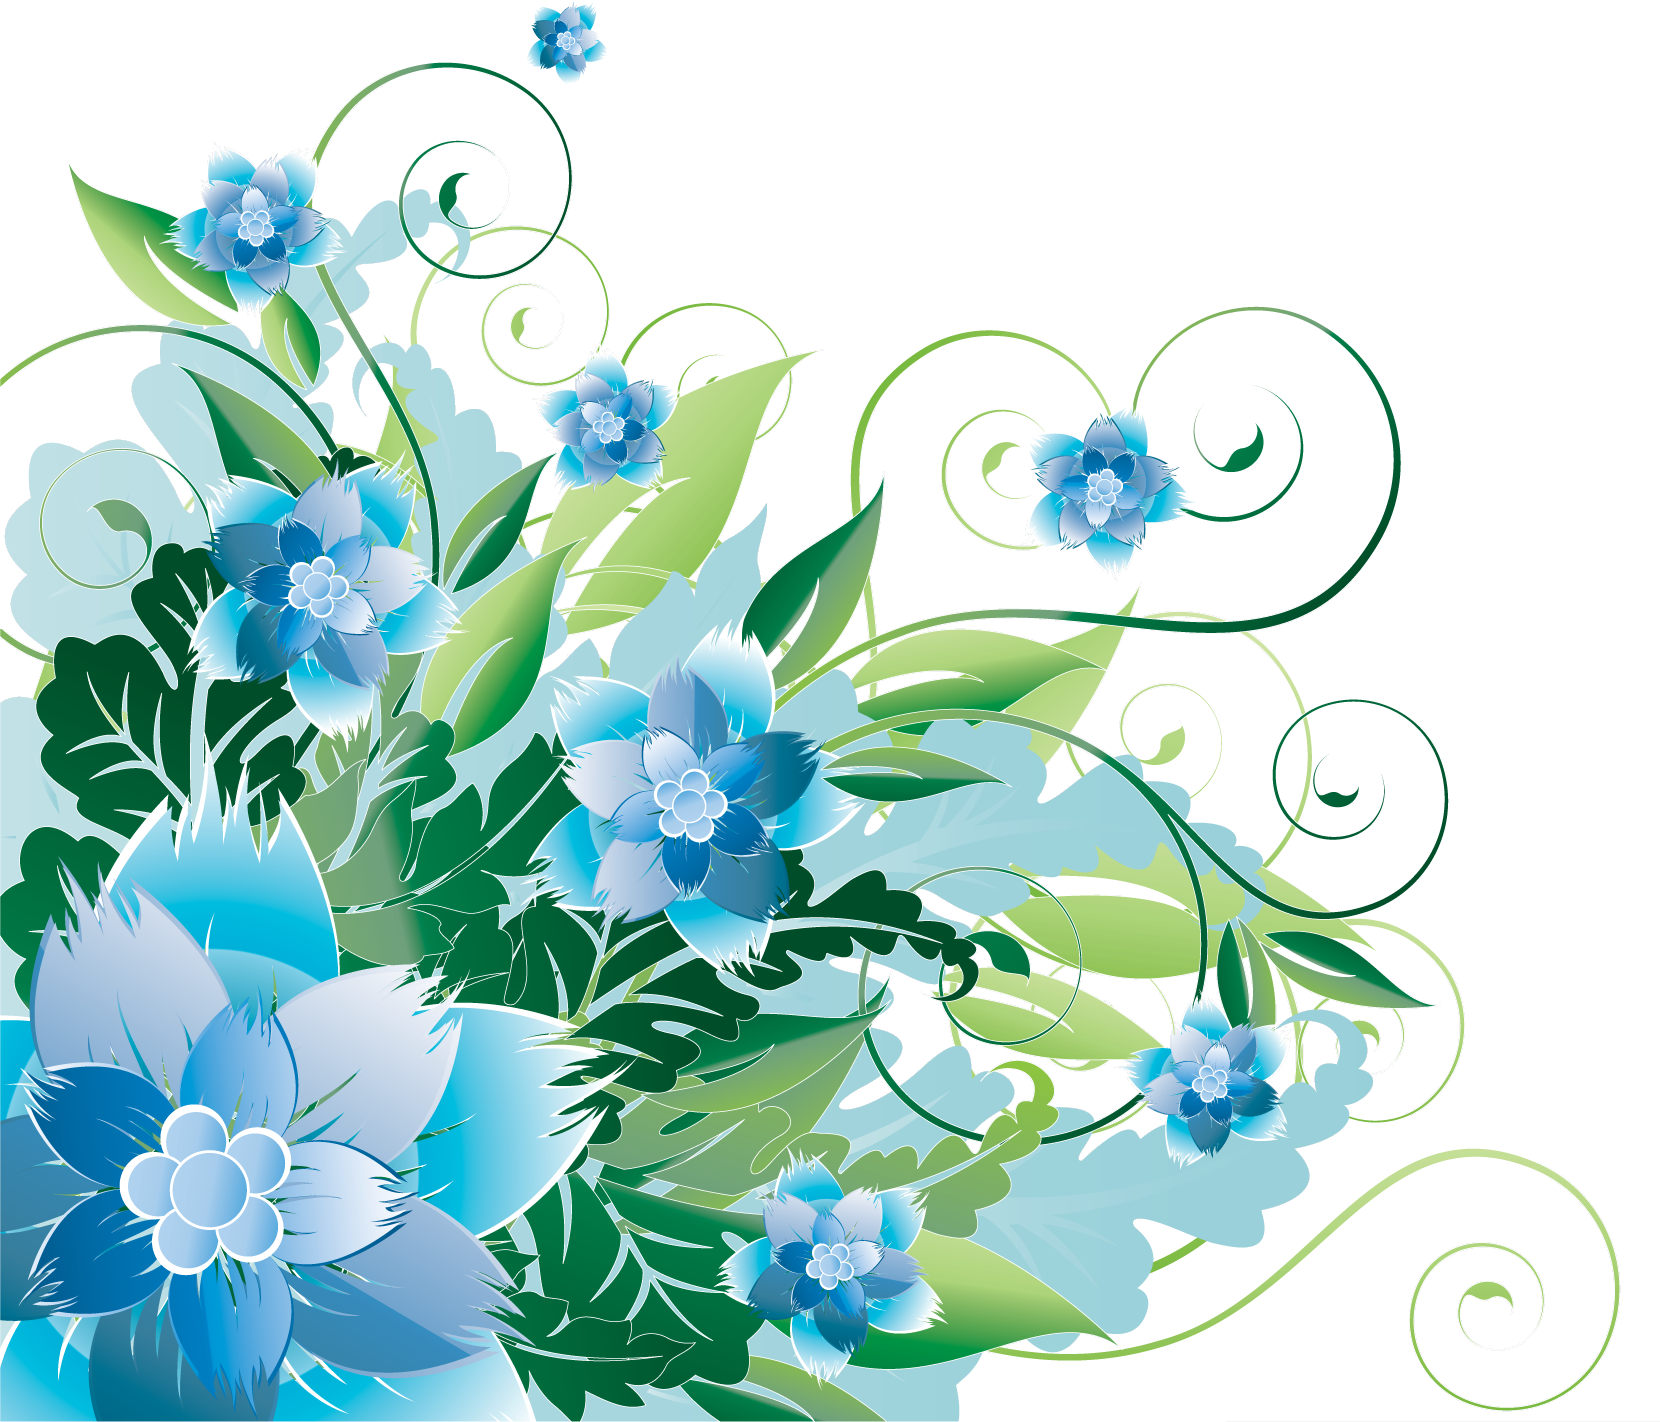 青い花のイラスト フリー素材 No 291 青 群青 茎葉 蔓